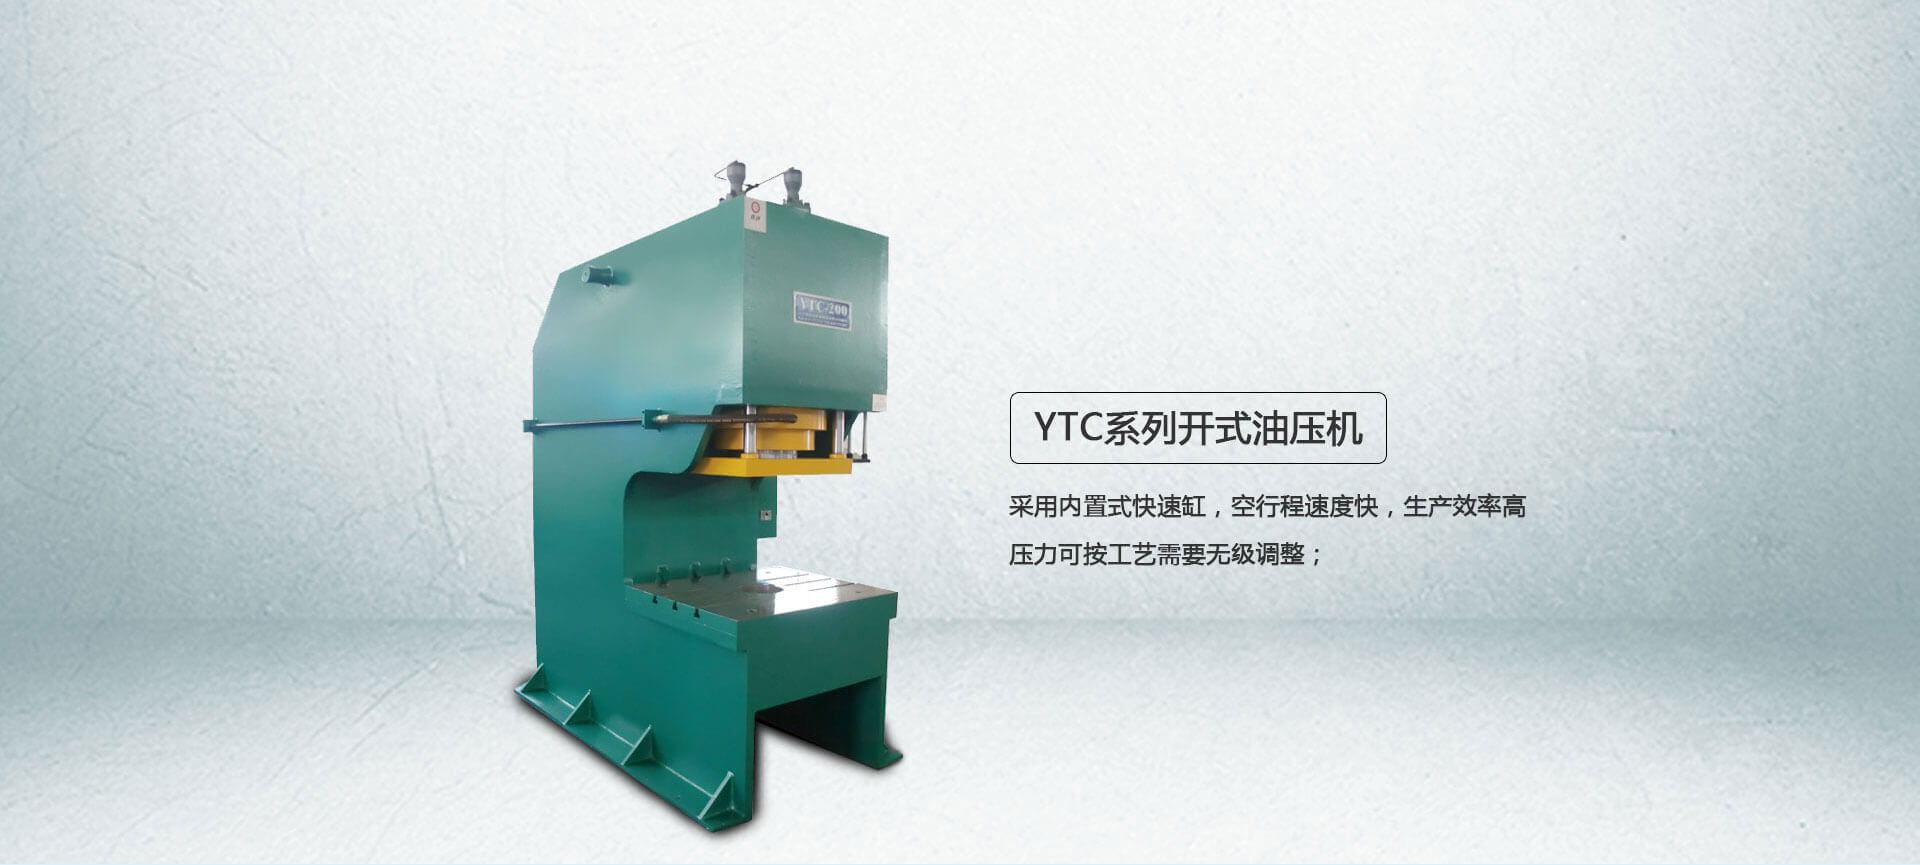 YTC系列单柱油压机